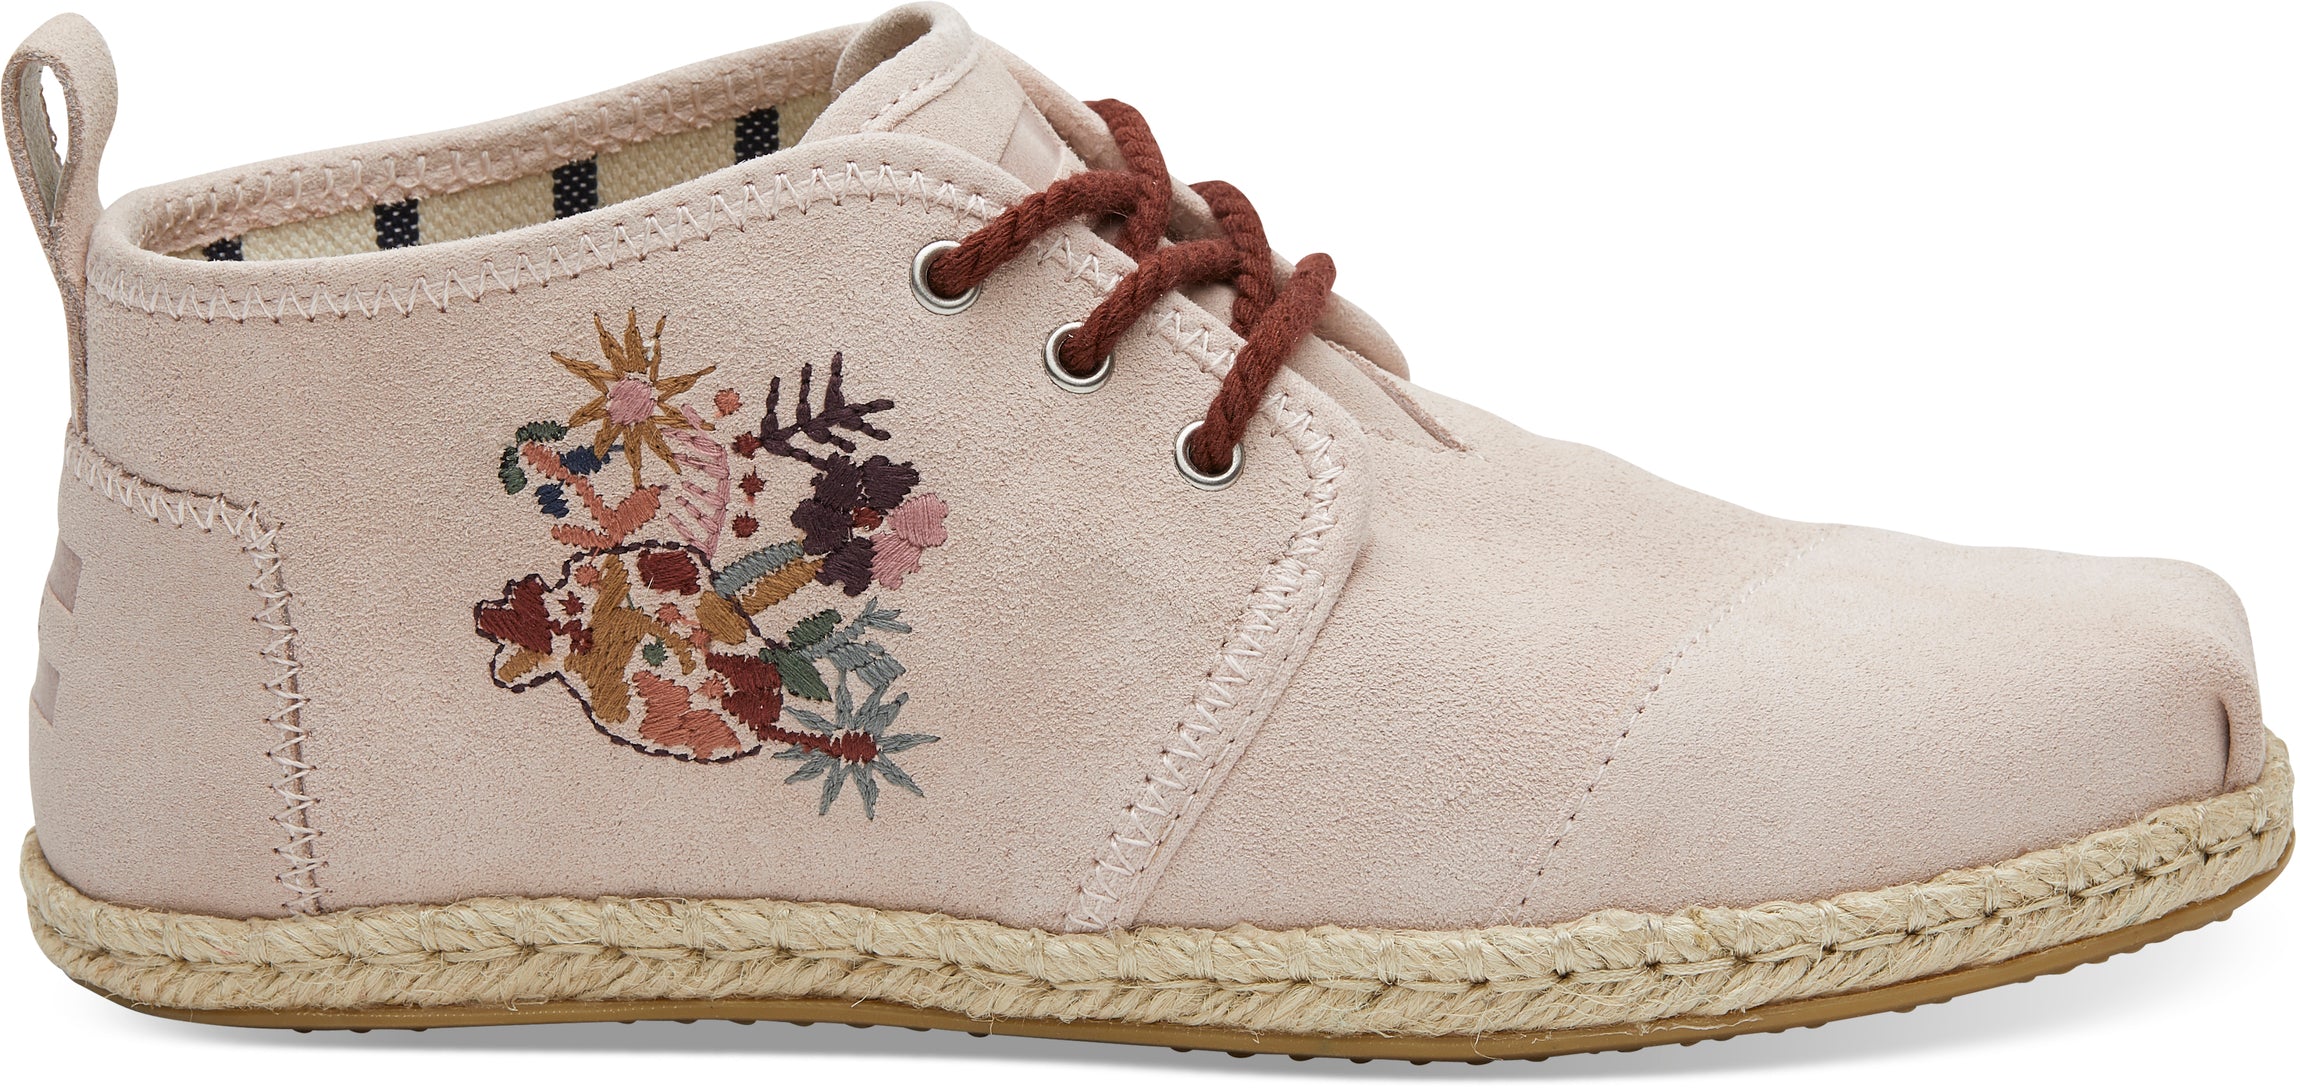 Dámské růžové kotníkové boty TOMS Embroidery Botas